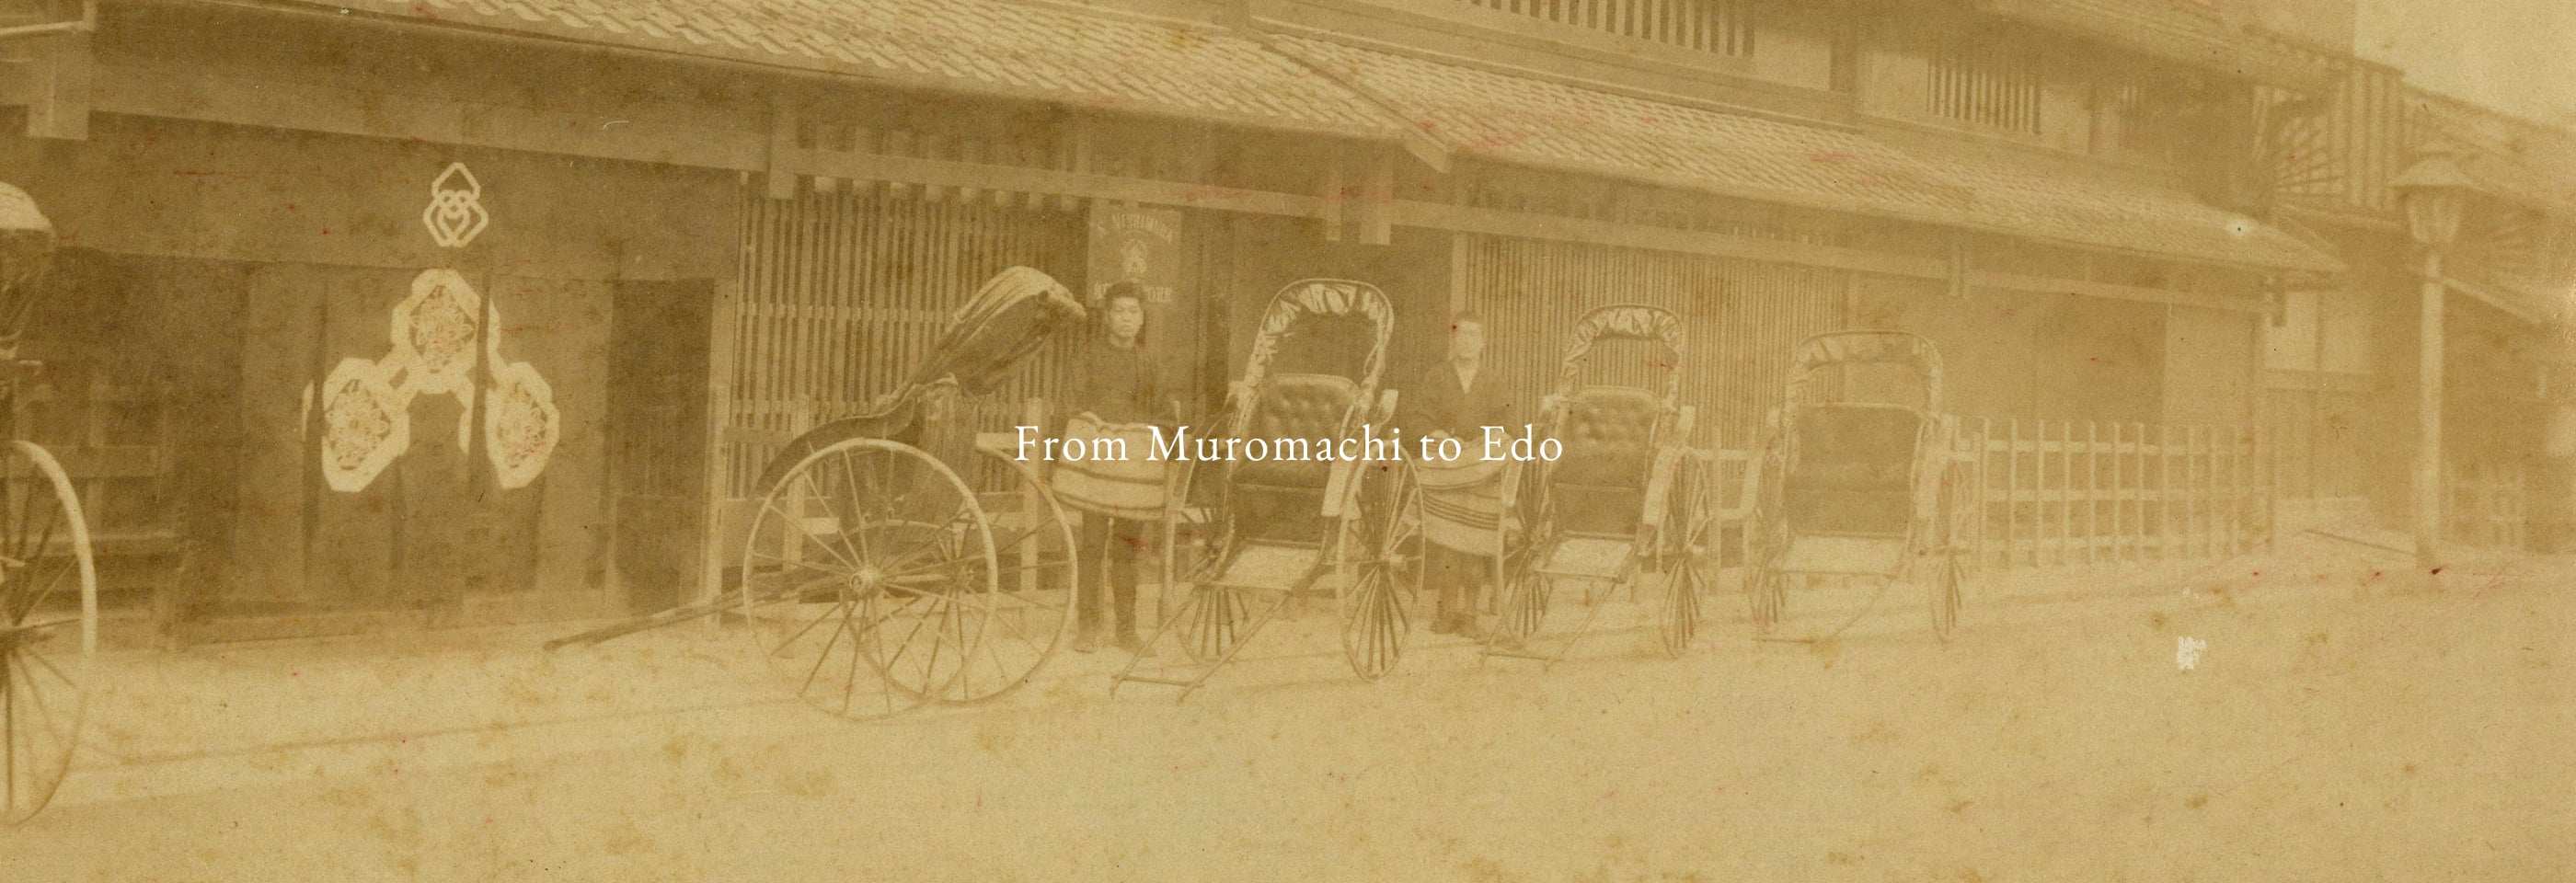 From Muromachi to Edo